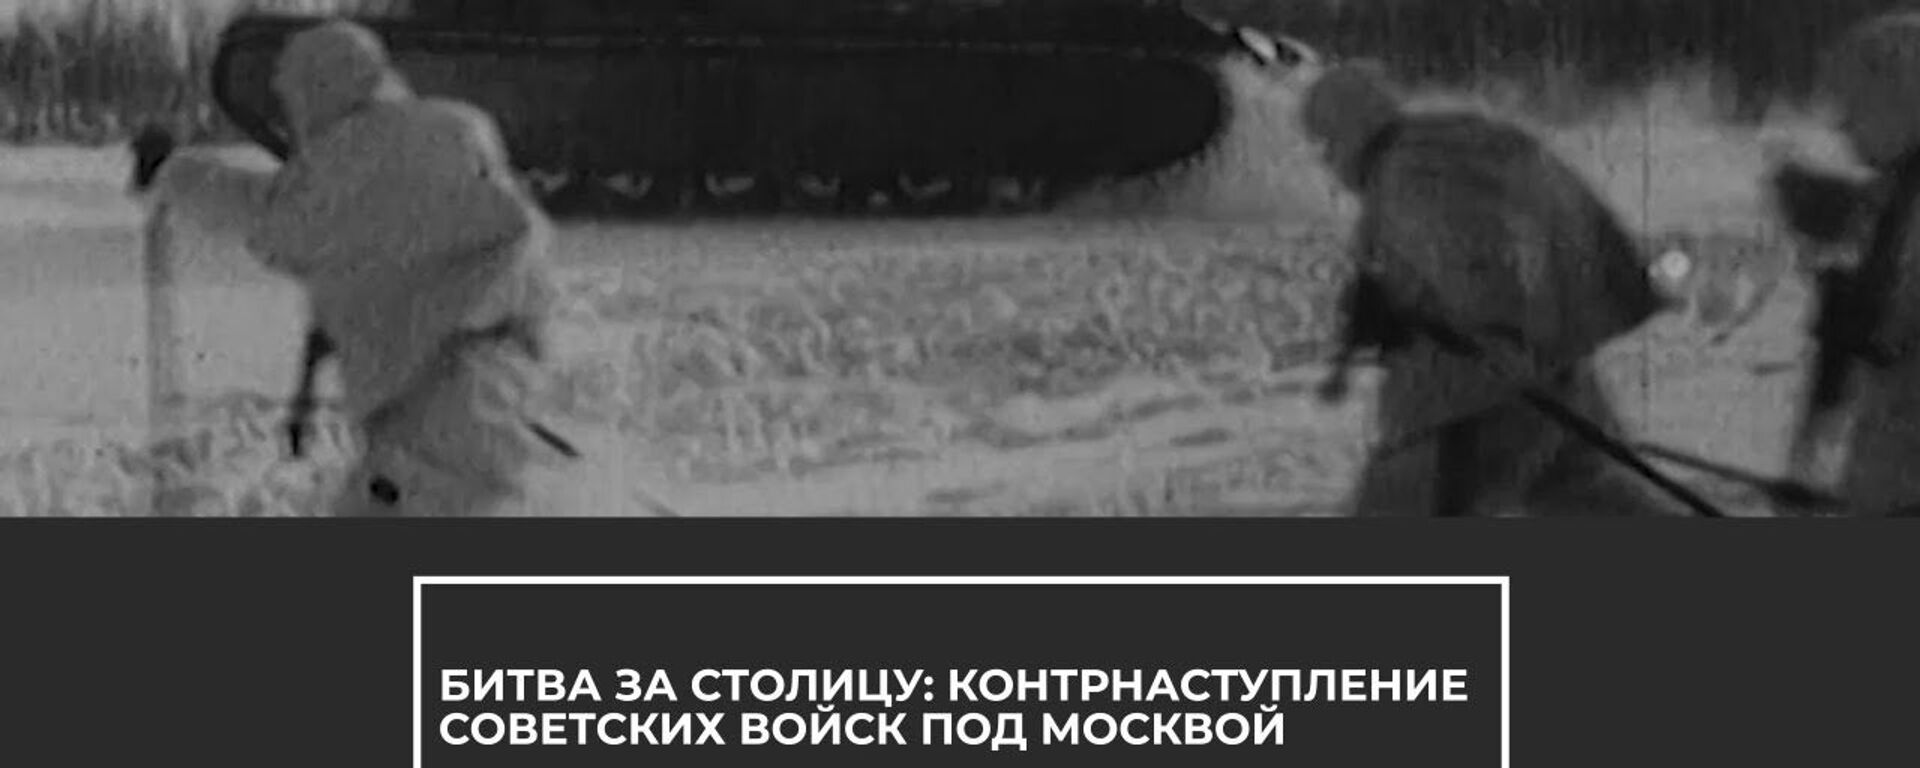 Первое крупное поражение Гитлера в Великой Отечественной войне: битва за Москву - Sputnik Латвия, 1920, 05.12.2020